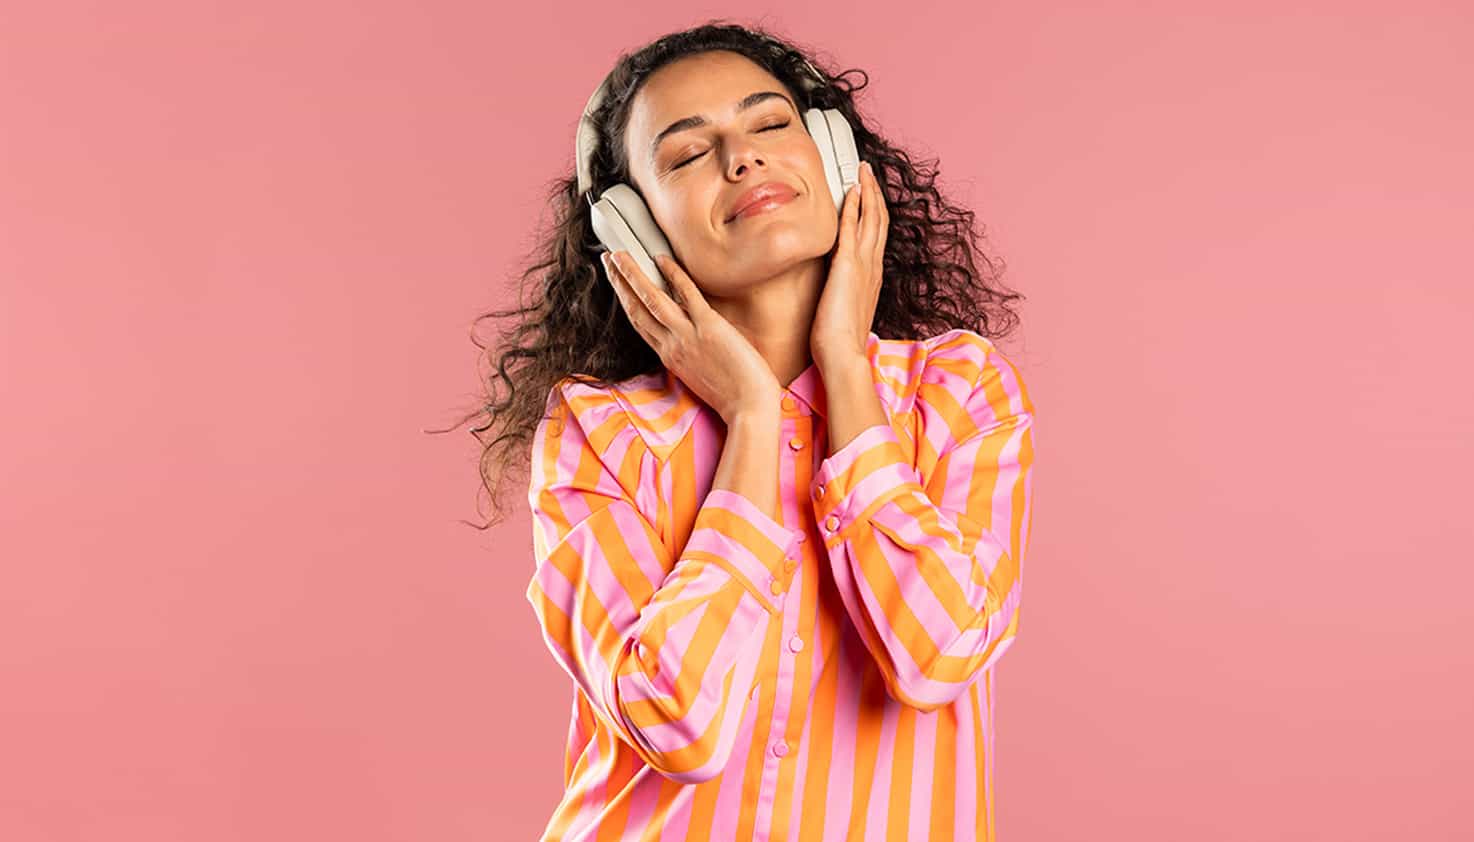 Eine Frau auf einem rosa Hintergrund genießt Musik mit geschlossenen Augen durch ihre geräuschunterdrückenden Kopfhörer.